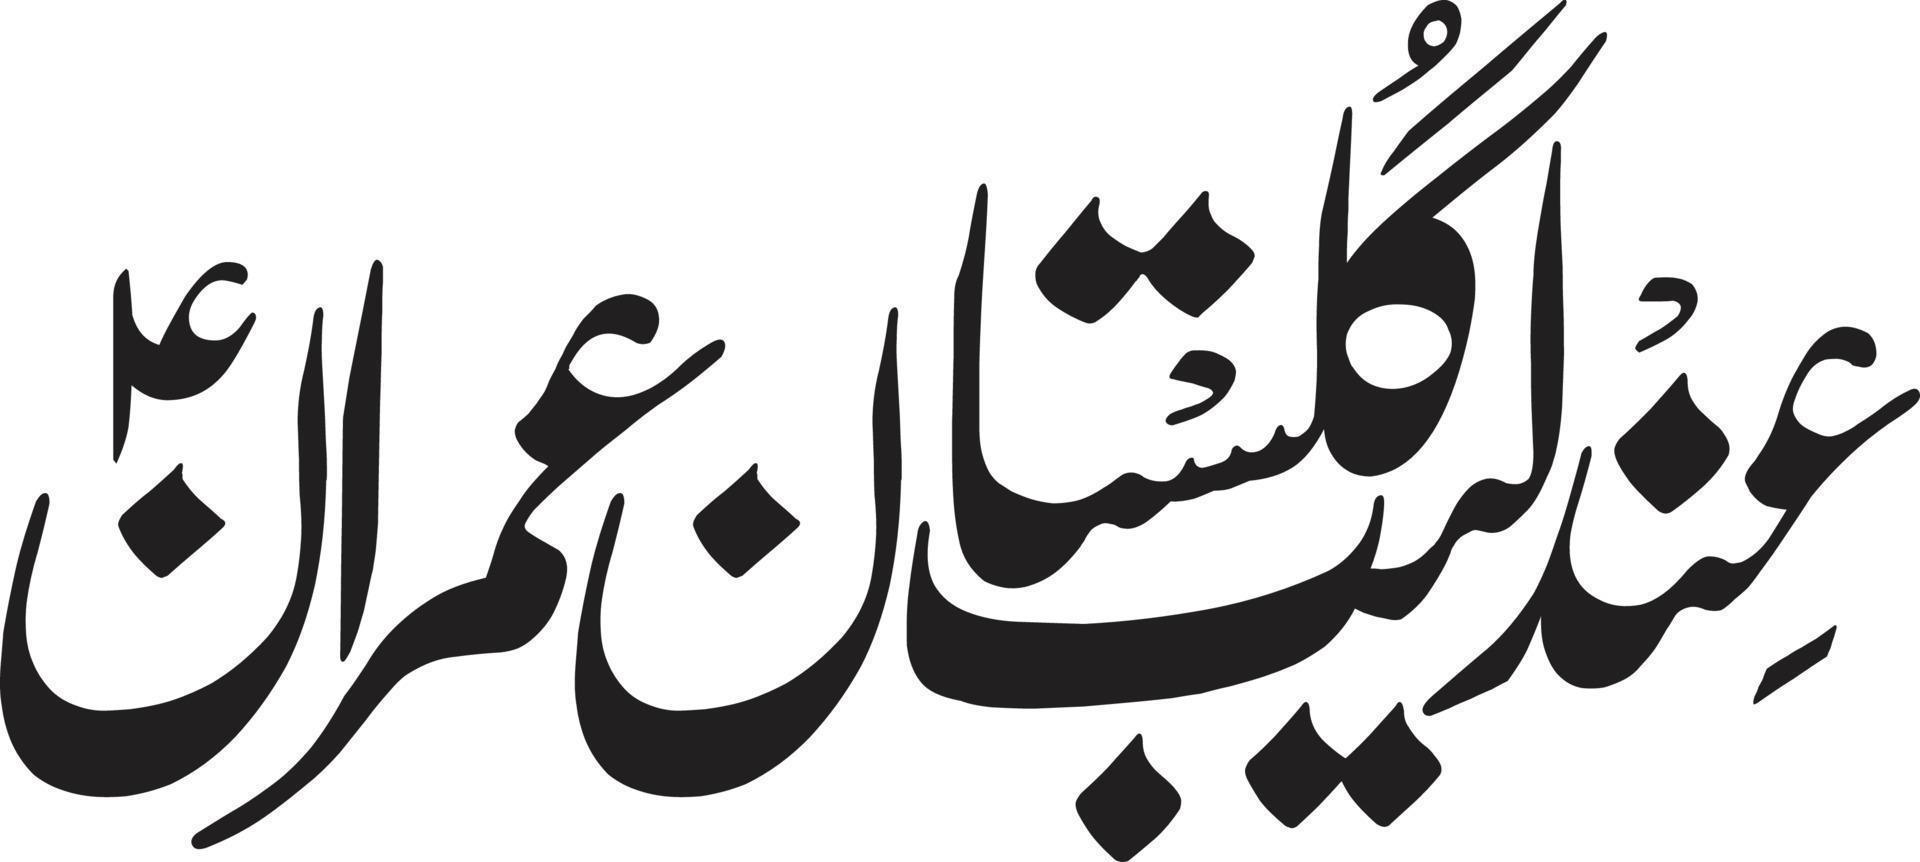 final leeb gulstan imran caligrafía islámica vector libre